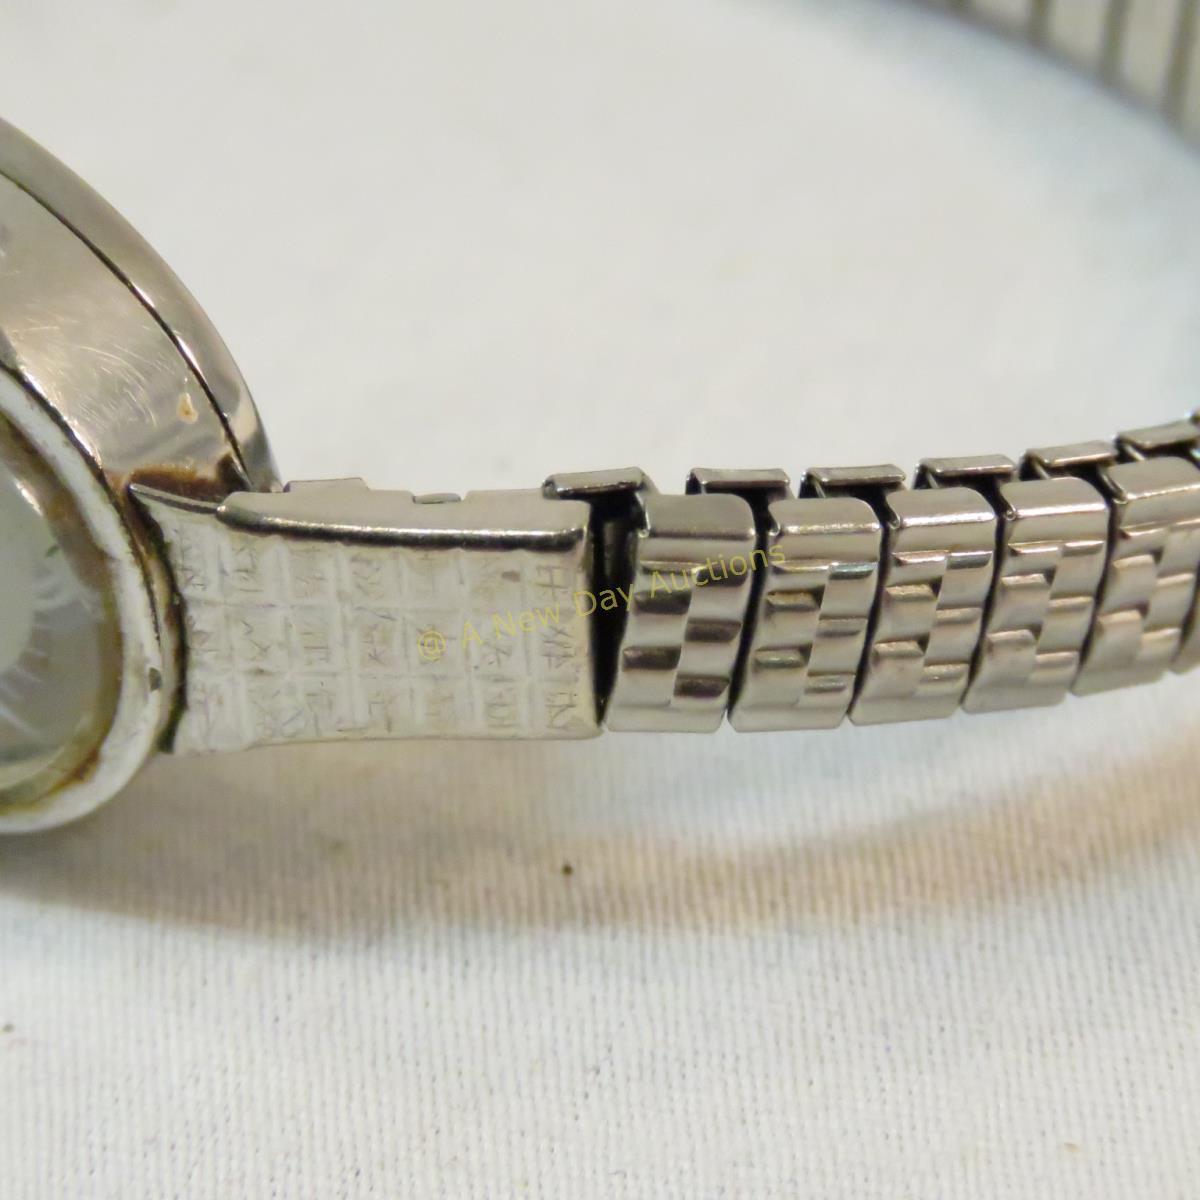 Hamilton electronic women's watch